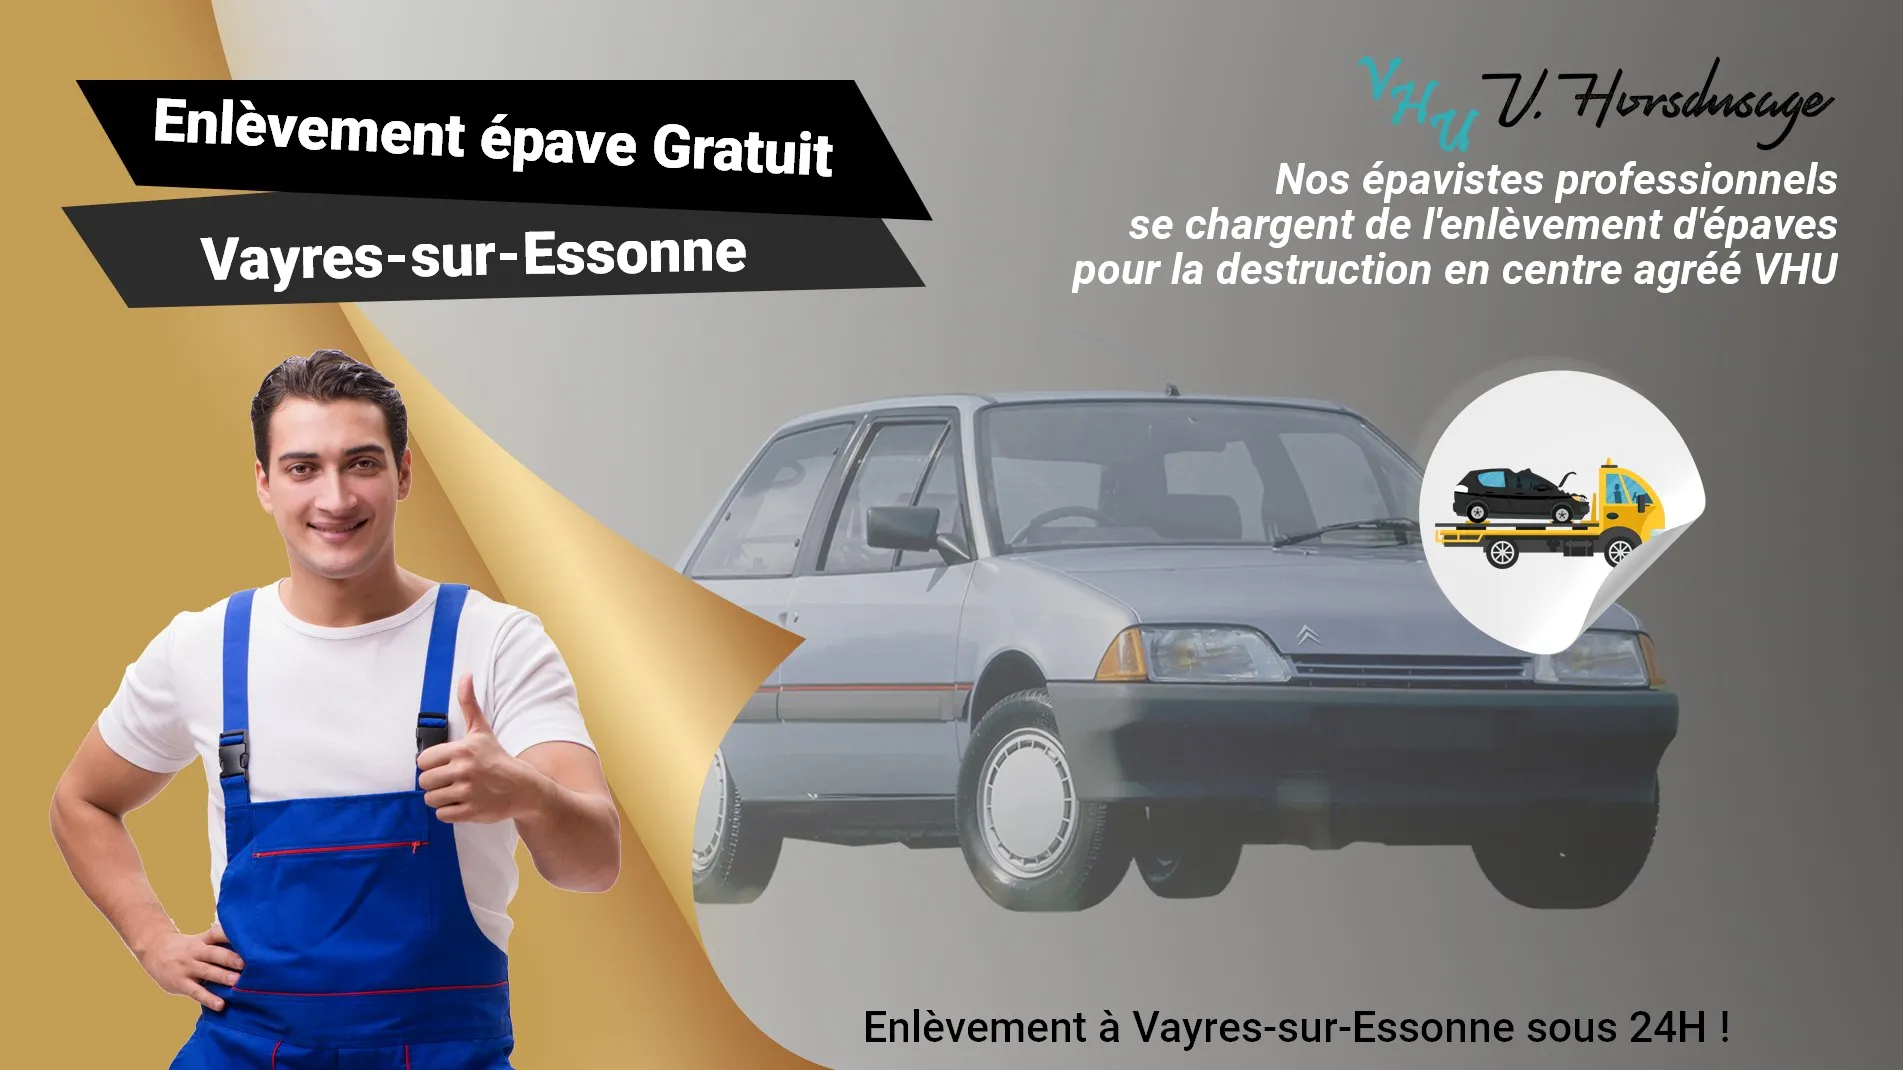 Pour un enlèvement gratuit à Vayres-sur-Essonne, contactez nos épavistes agréé VHU